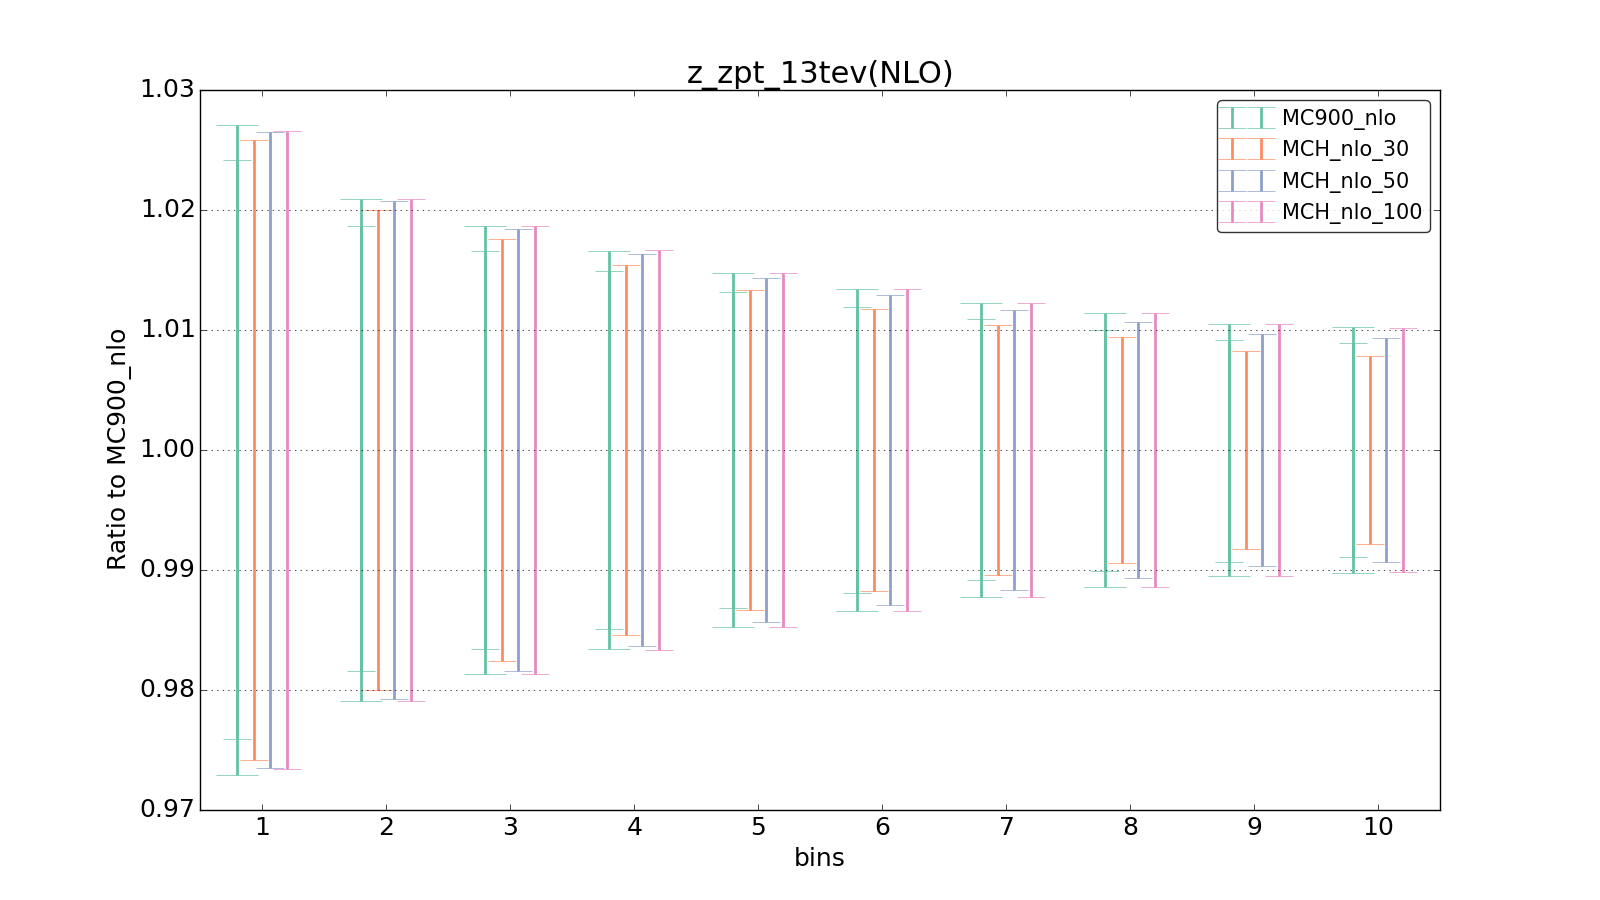 figure plots/pheno_new/NLO/ciplot_z_zpt_13tev(NLO).png